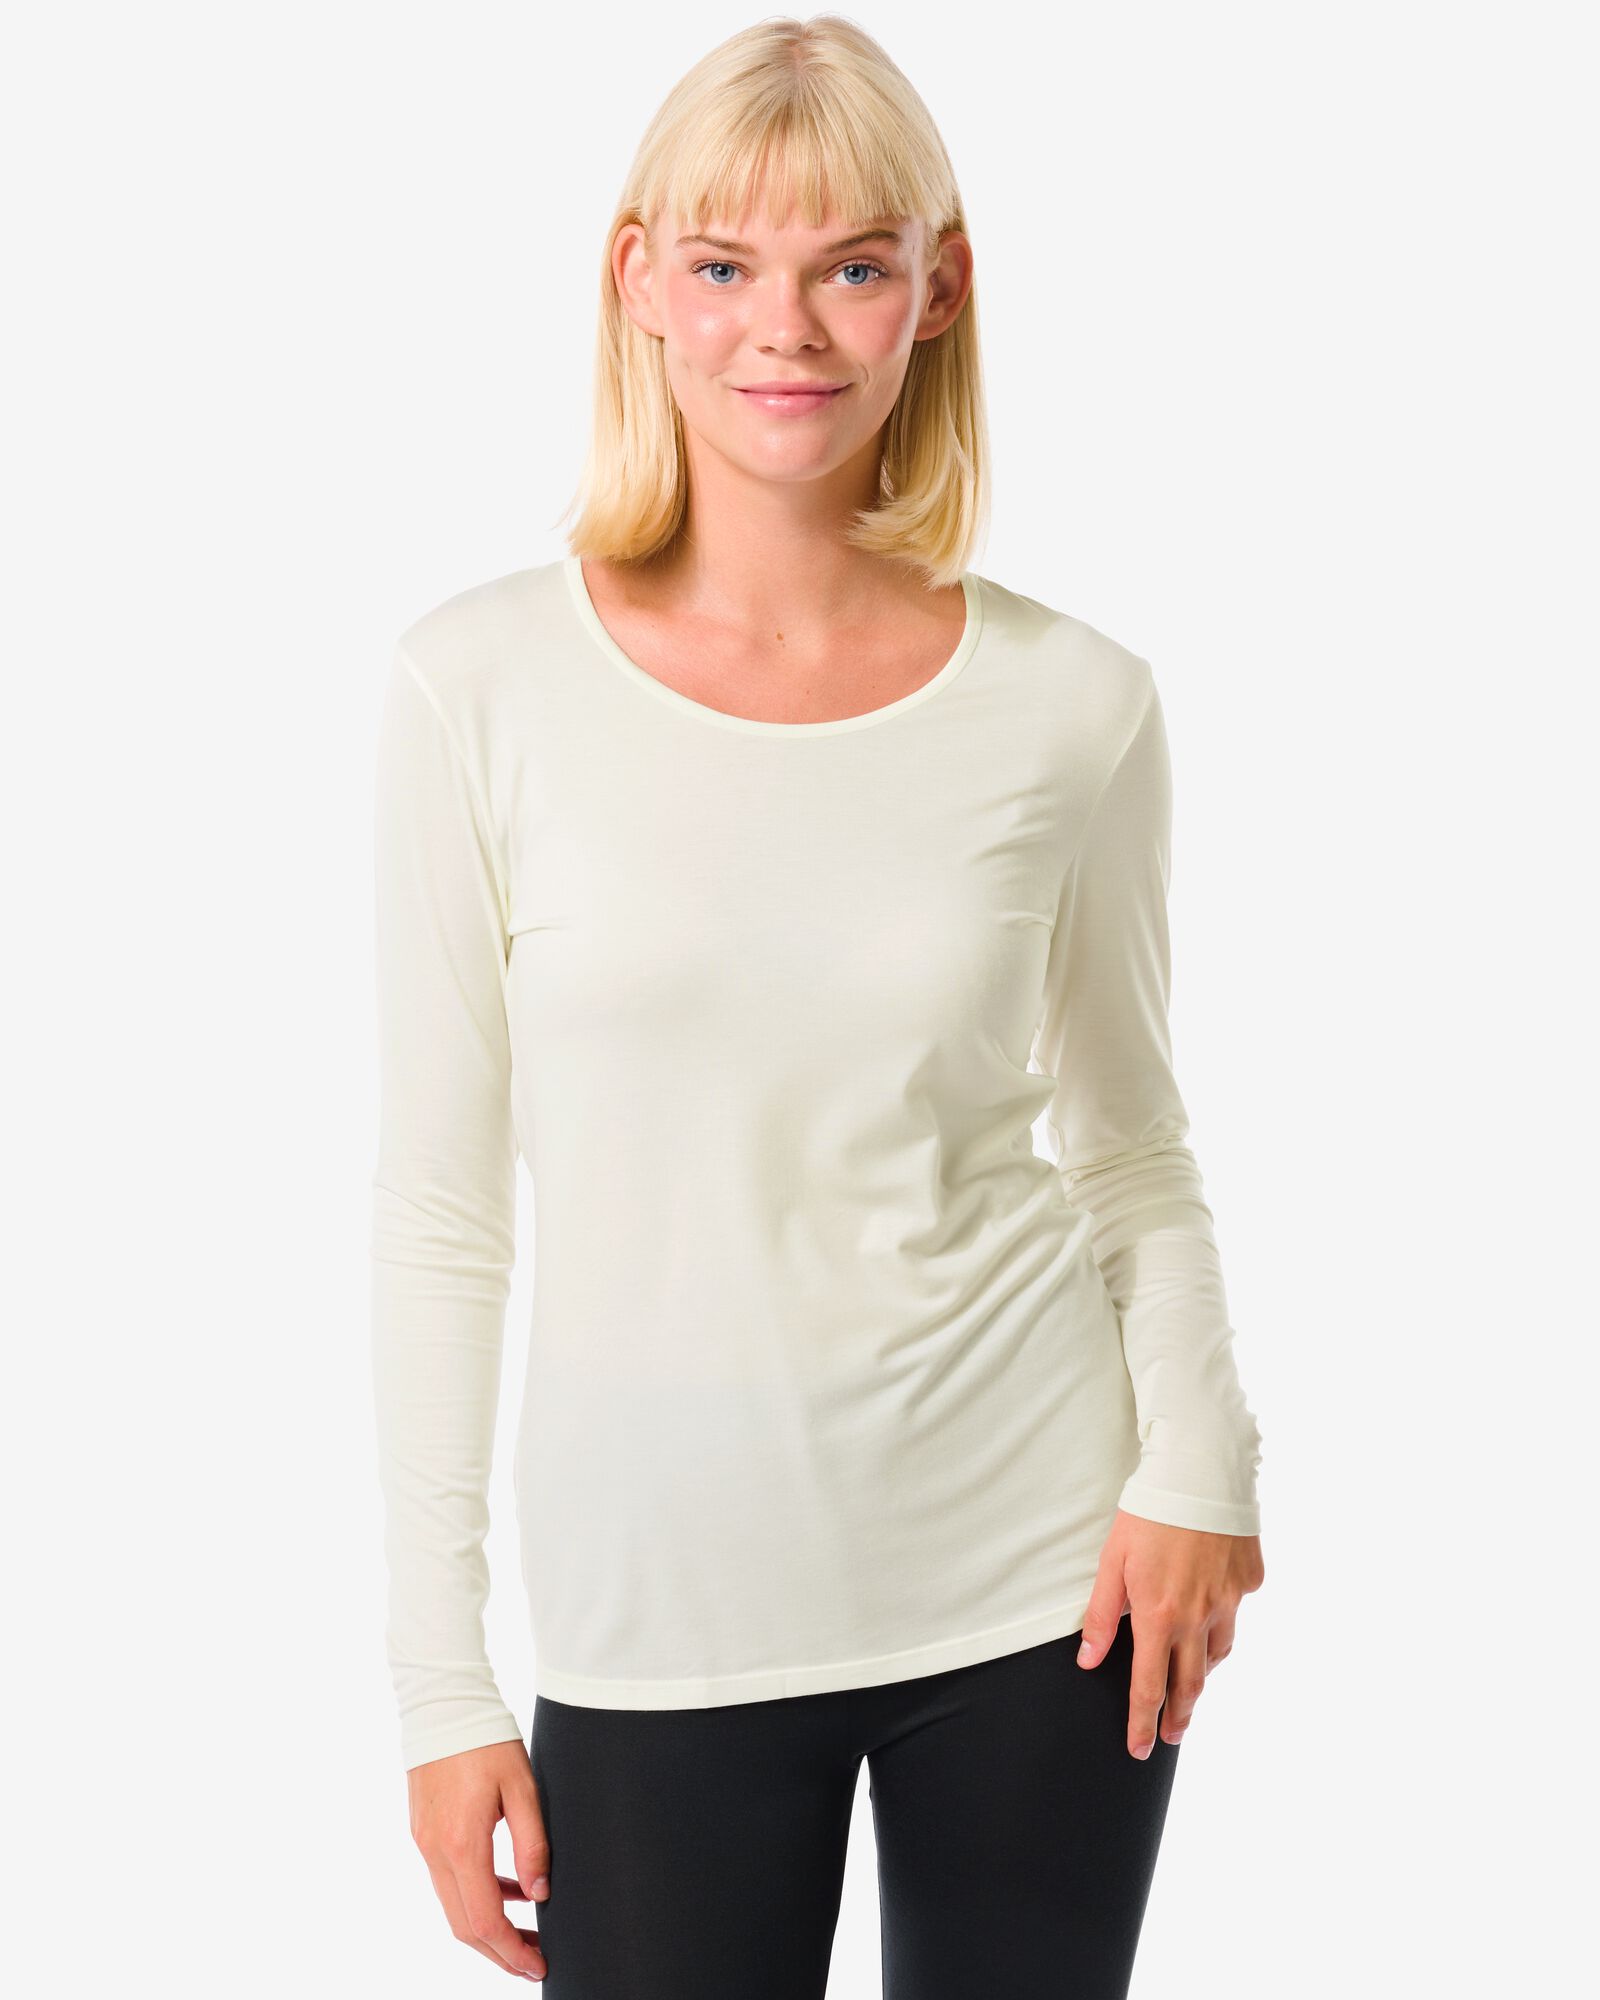 T-shirt manches longues thermique femme blanc